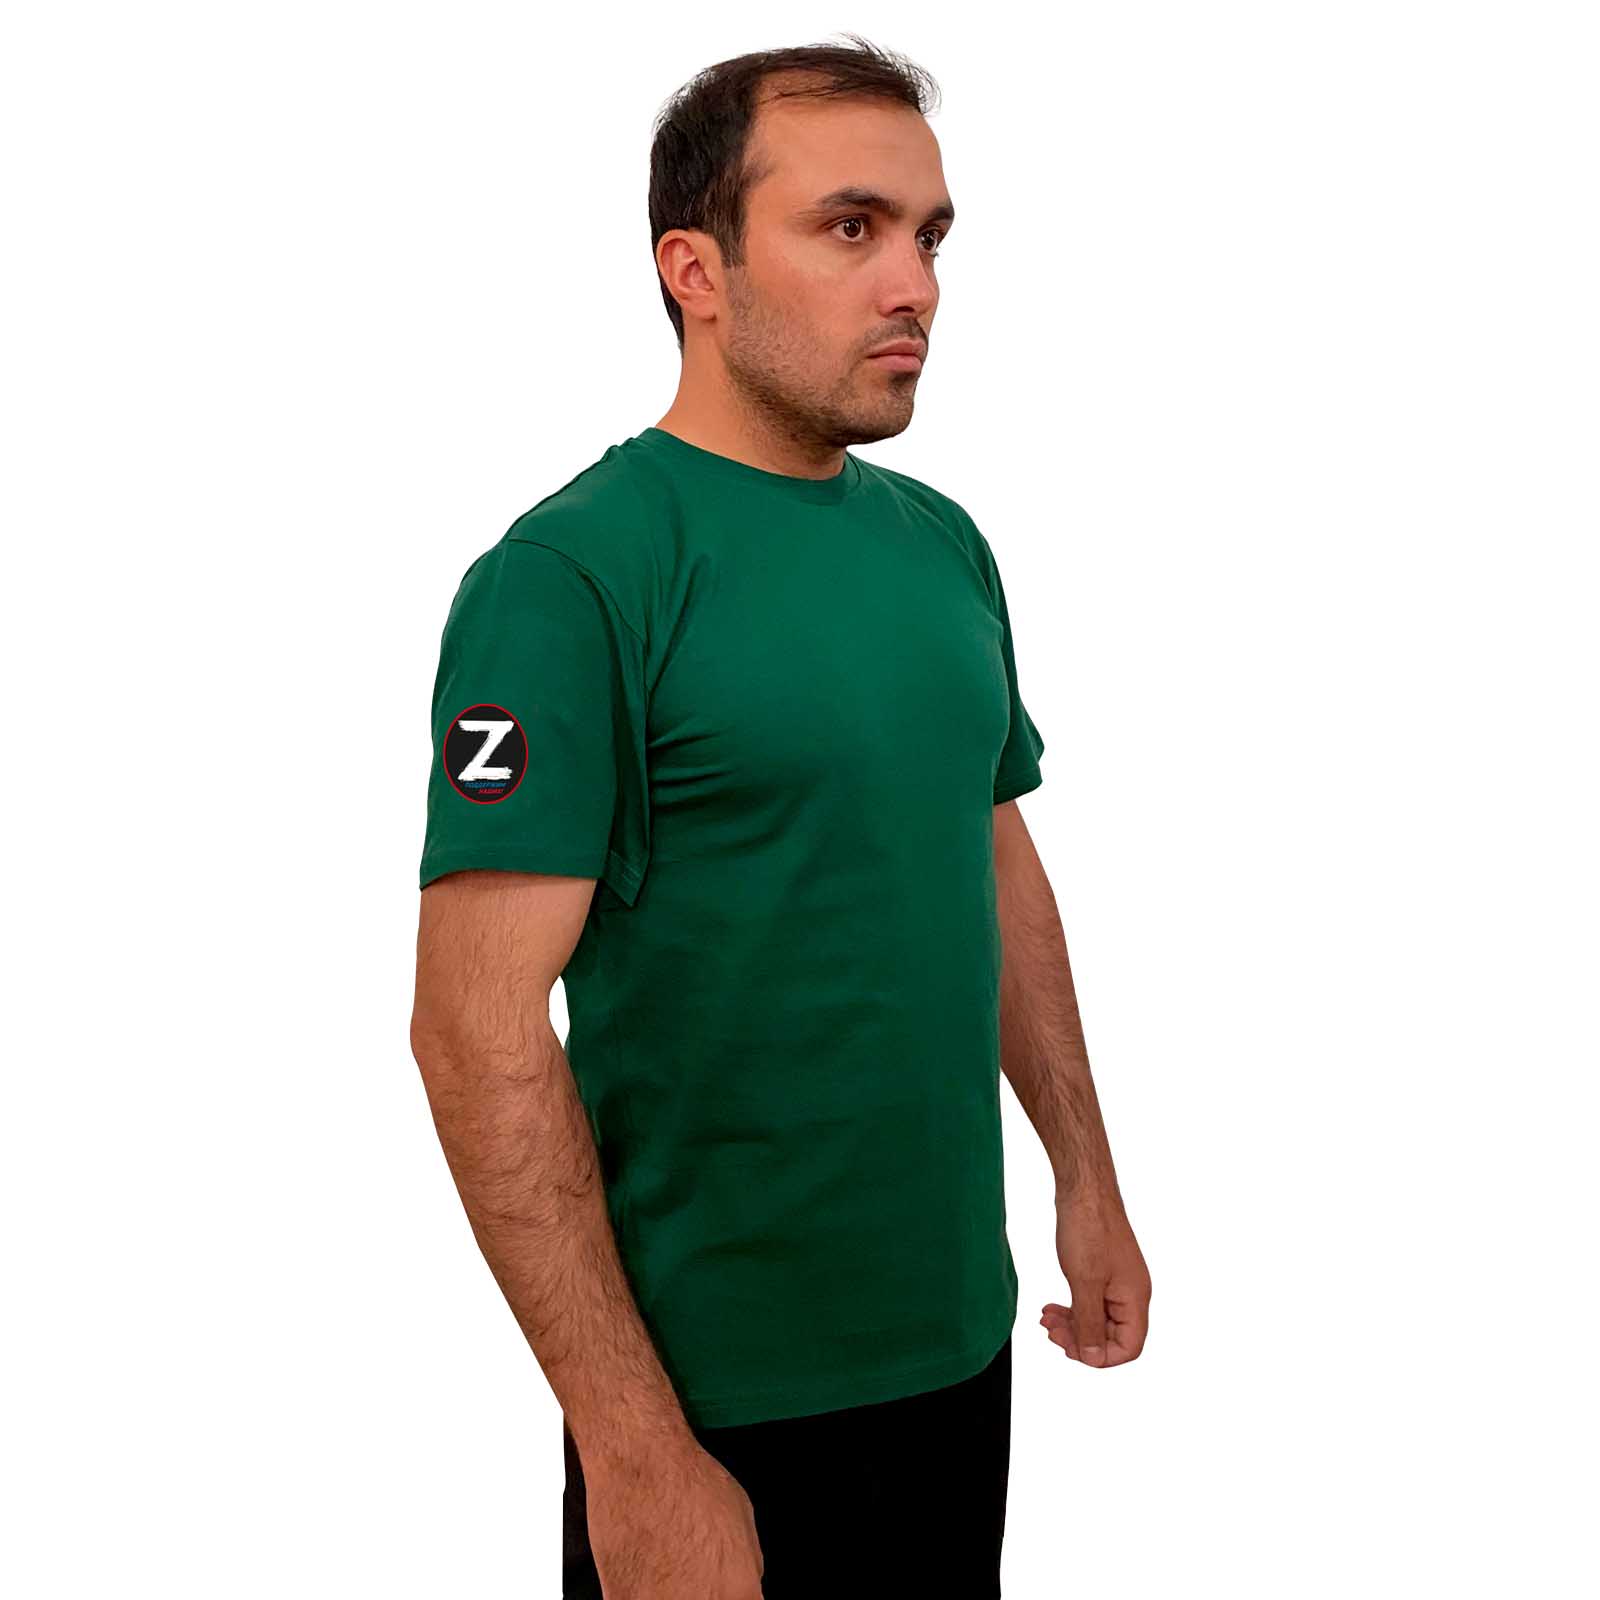 Зелёная футболка с термоаппликацией Z на рукаве